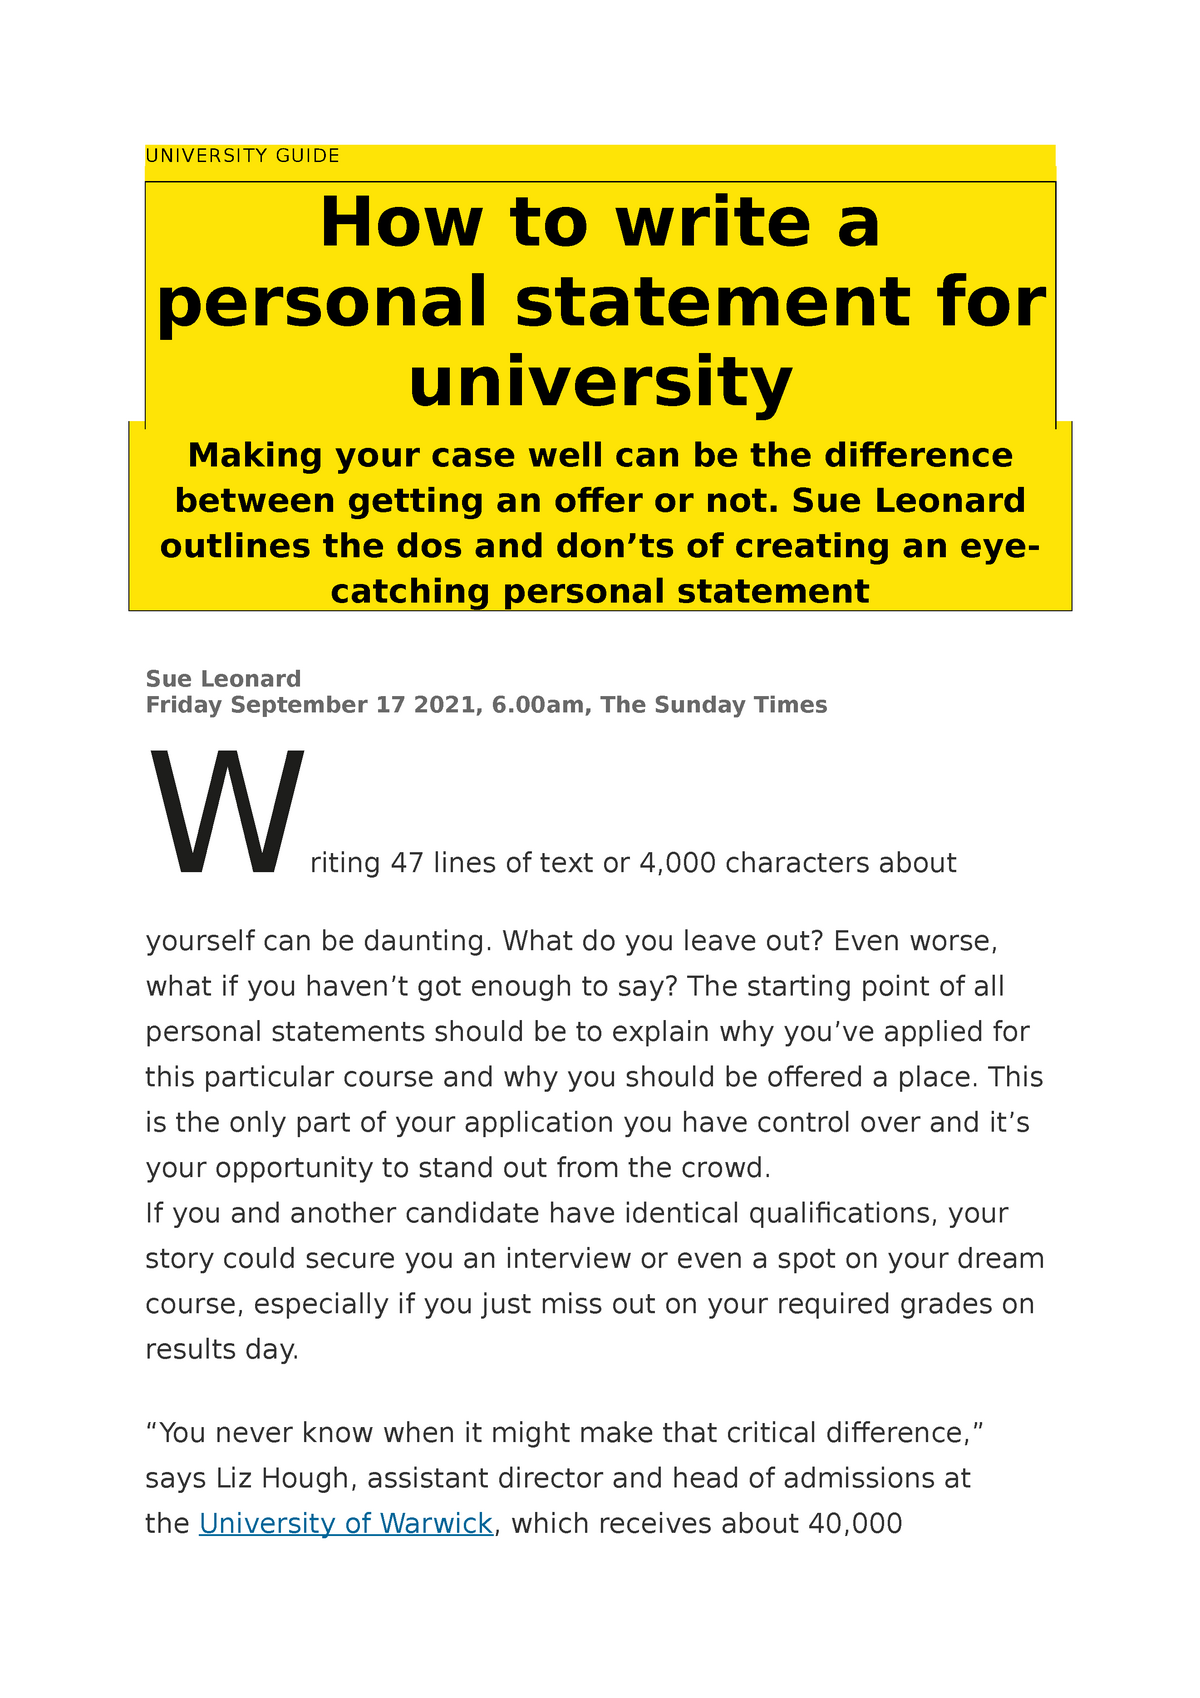 uni guide personal statement